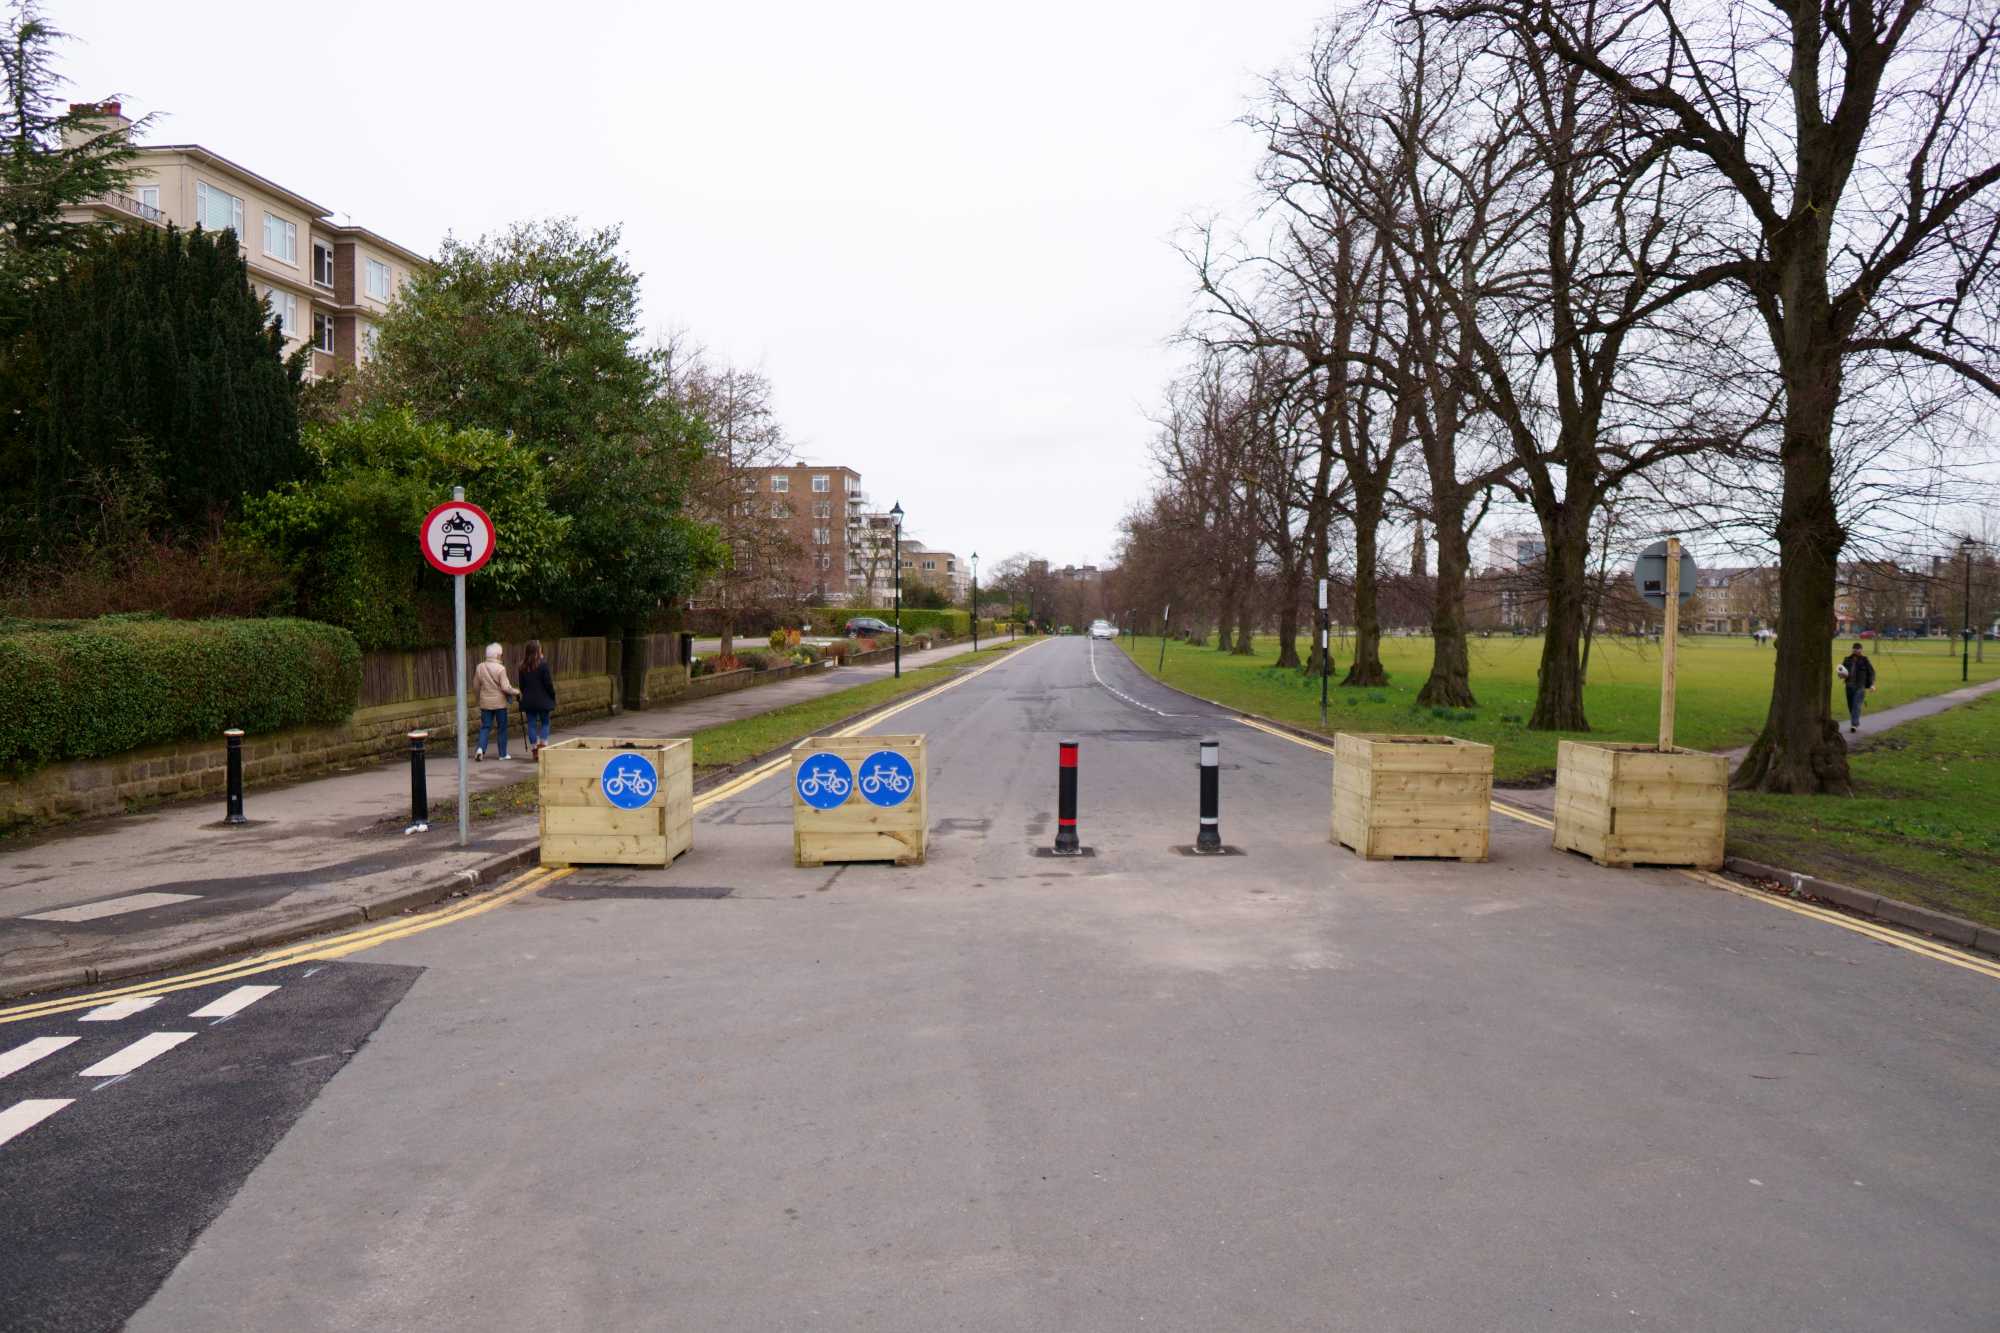 Barriers on Beech Grove, Harrogate